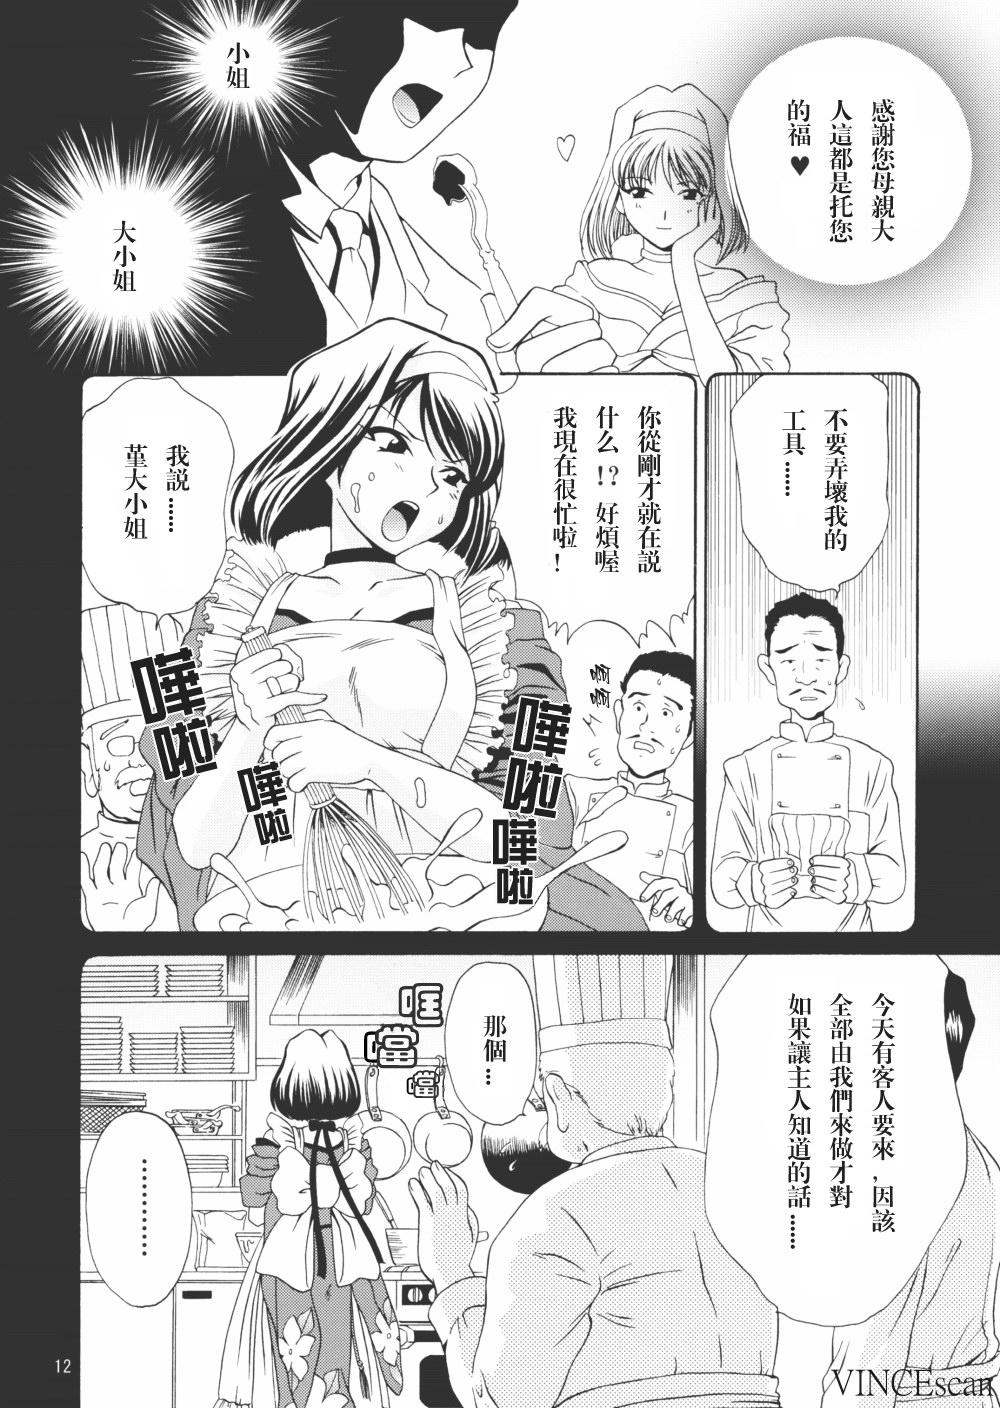 Twerking Chocolate Panic - Sakura taisen Latex - Page 11